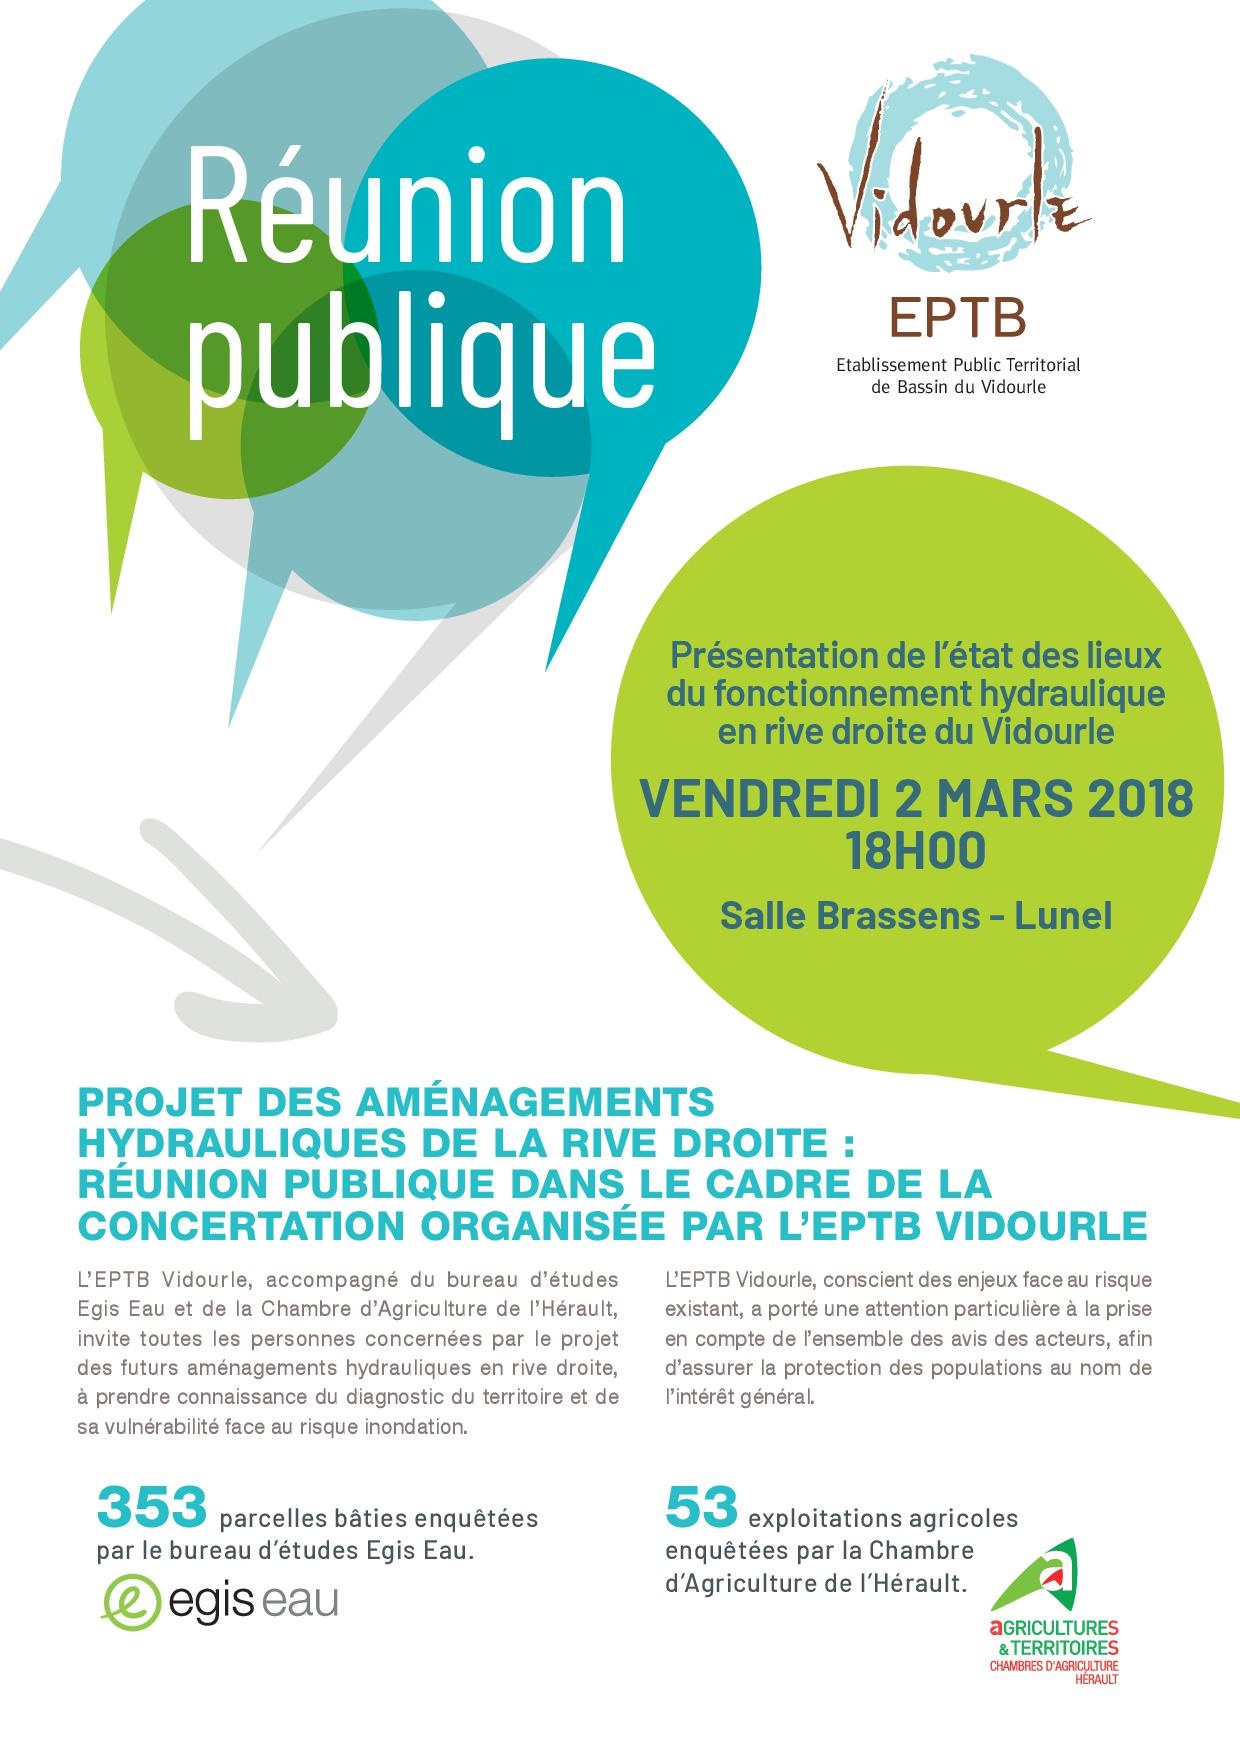 Vendredi 2 mars 2018 – Réunion publique : projet des aménagements hydrauliques de la rive droite